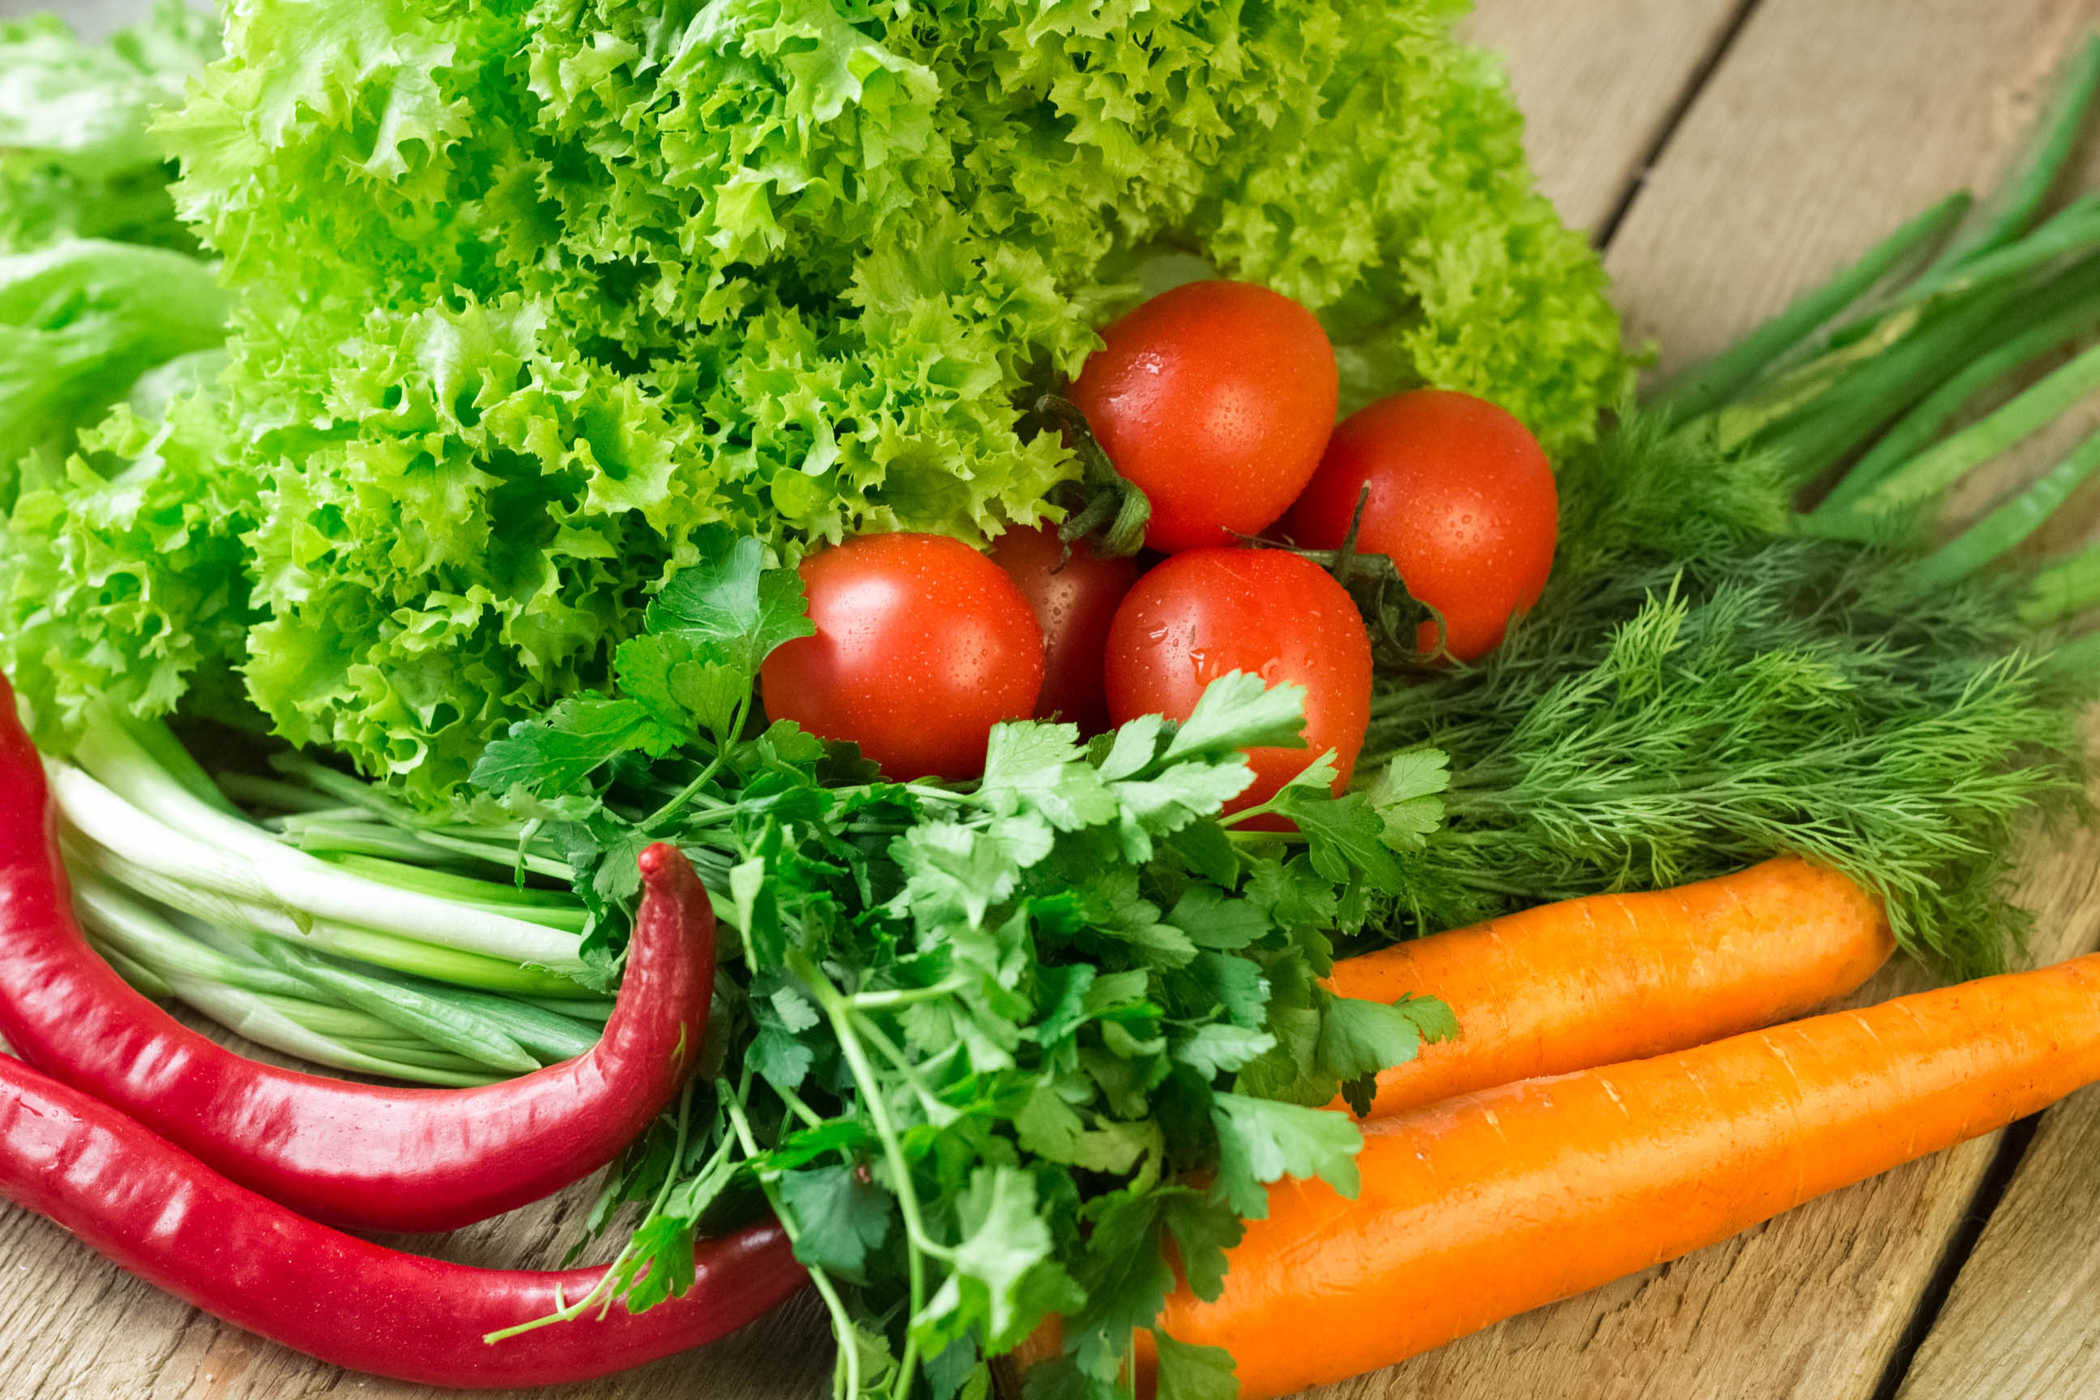   Nên ăn nhiều rau xanh để bổ sung vitamin cho mắt  